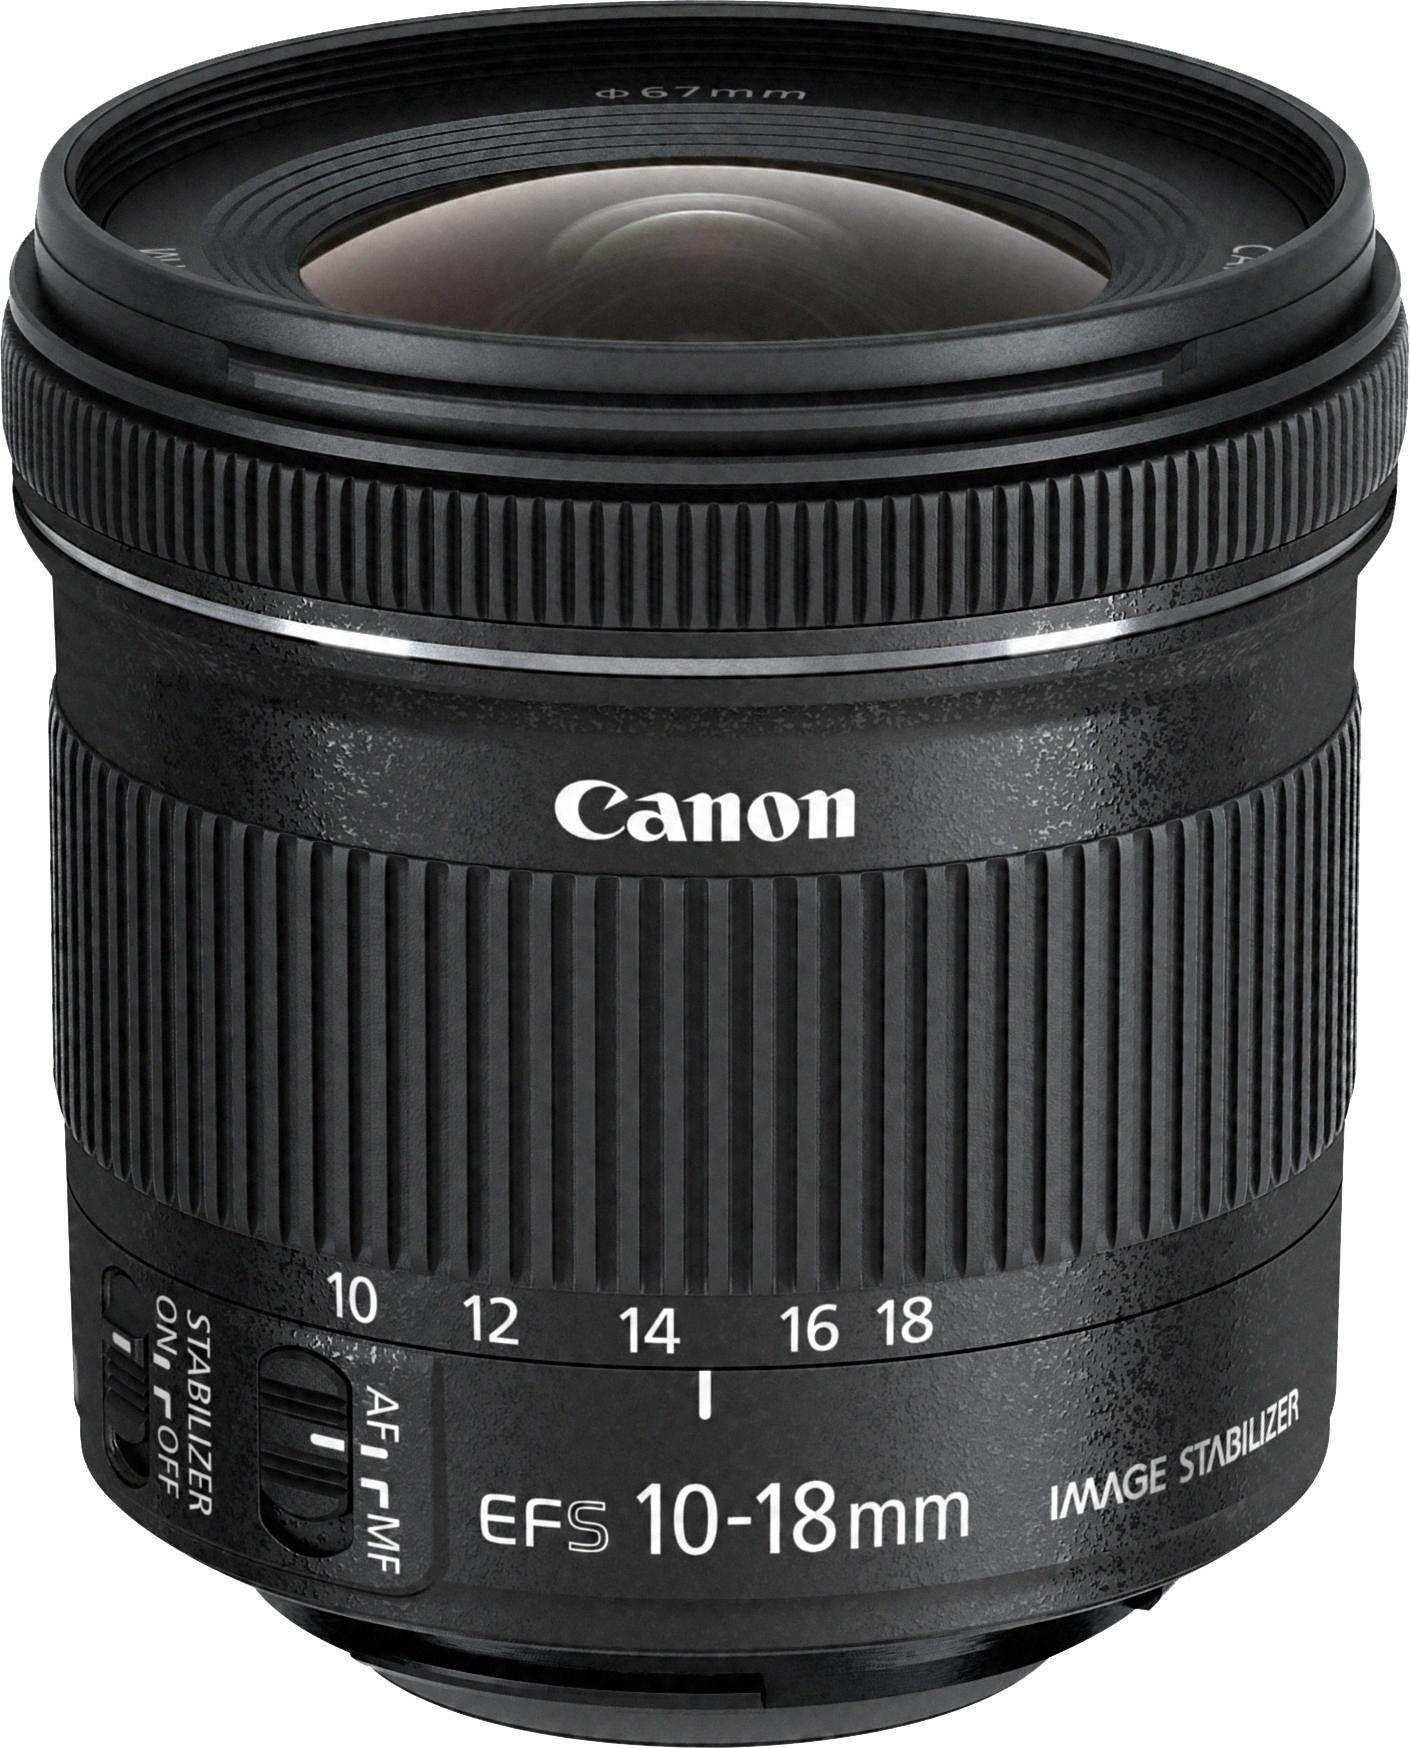 Superweitwinkelobjektiv Canon EF-S